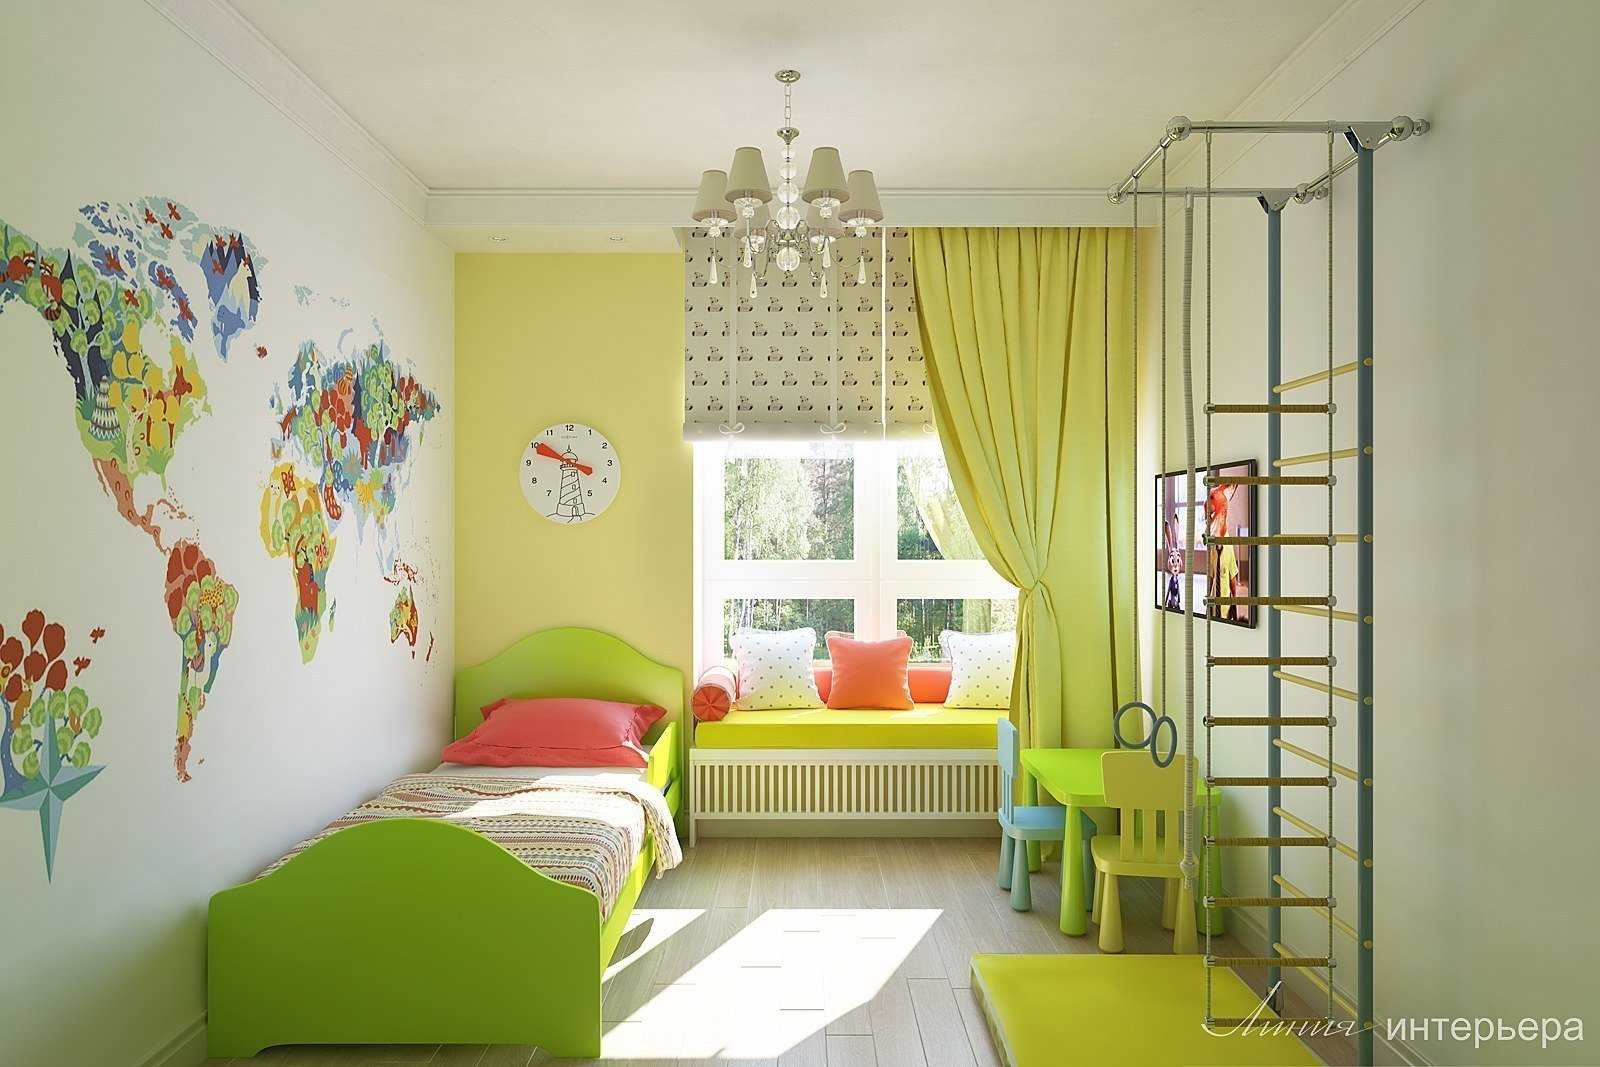 Как подобрать мебель по цвету к полу или к цвету стен, какой цвет сочетать с белыми стенами в современном стиле